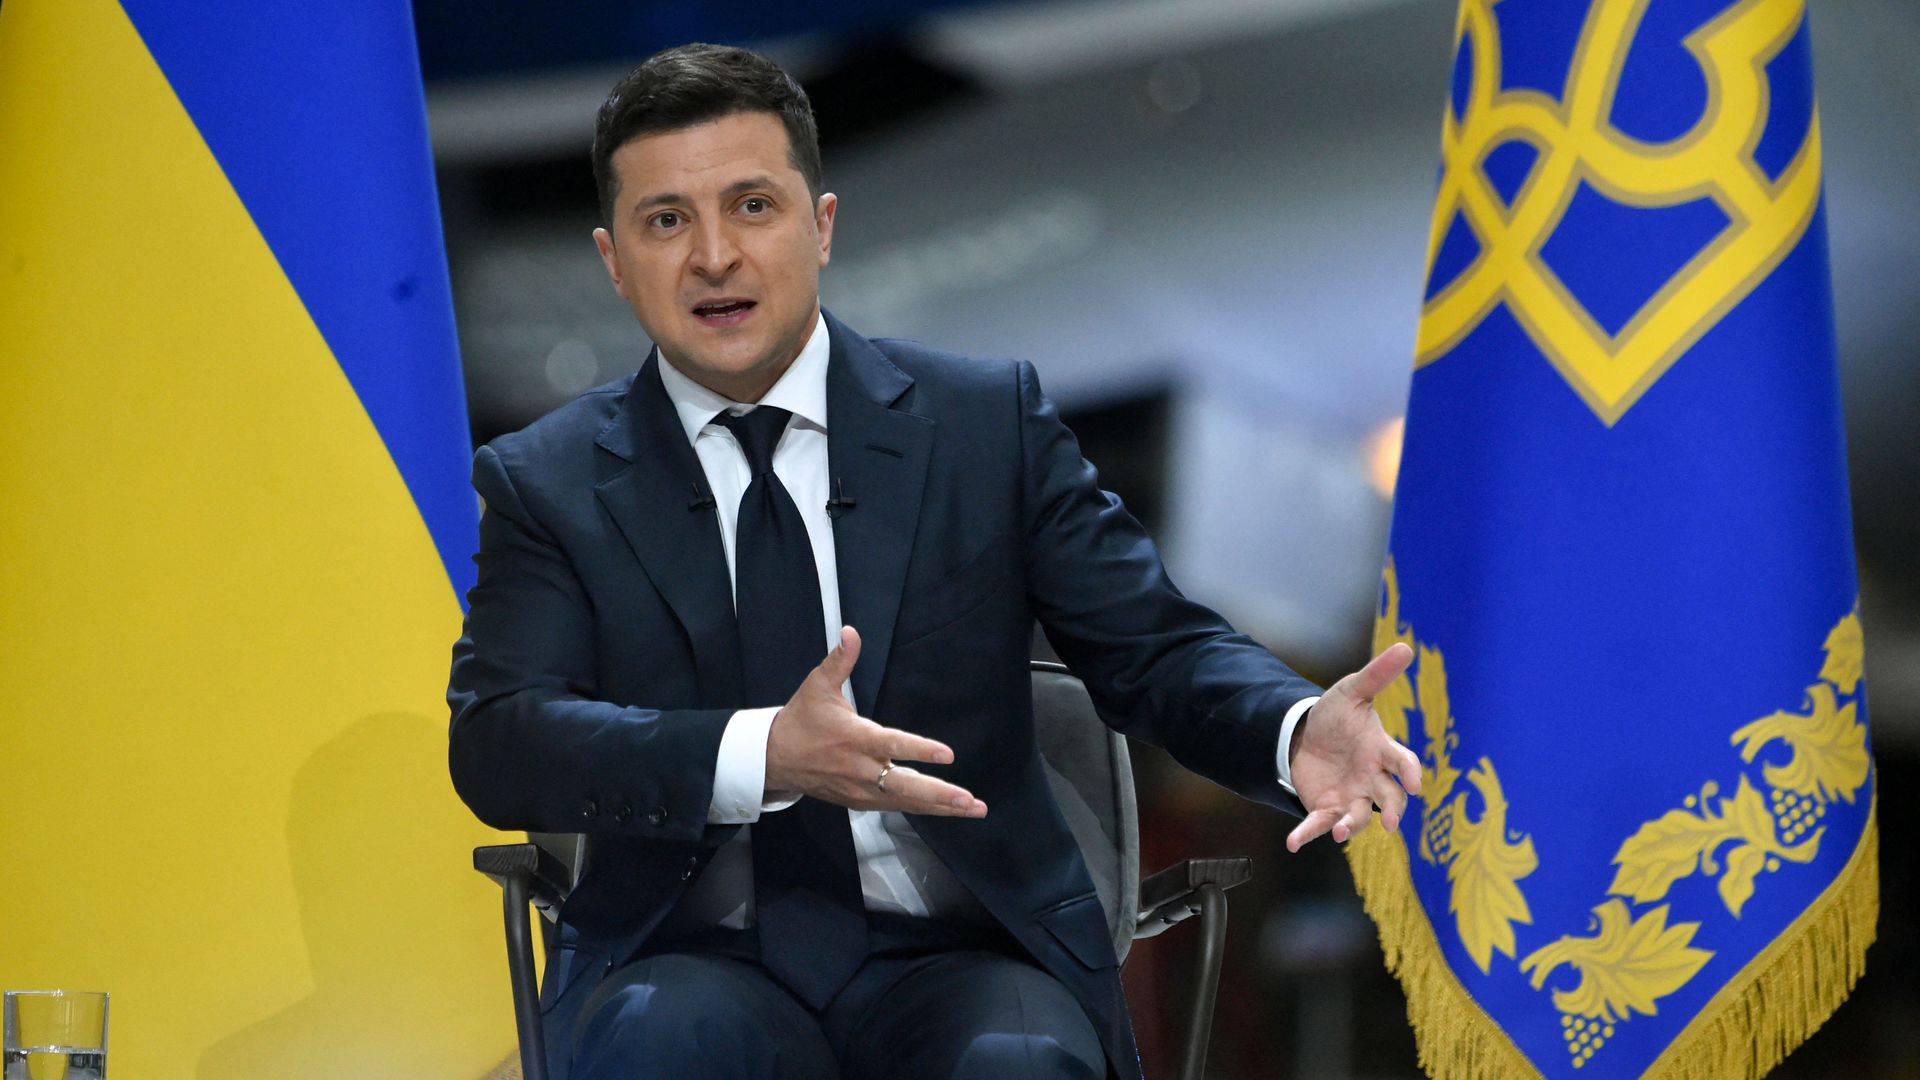 Β.Ζελένσκι: «Δεν είναι ώρα για εκλογές στην Ουκρανία – Δεν υπάρχει χώρος για αντιπαραθέσεις»